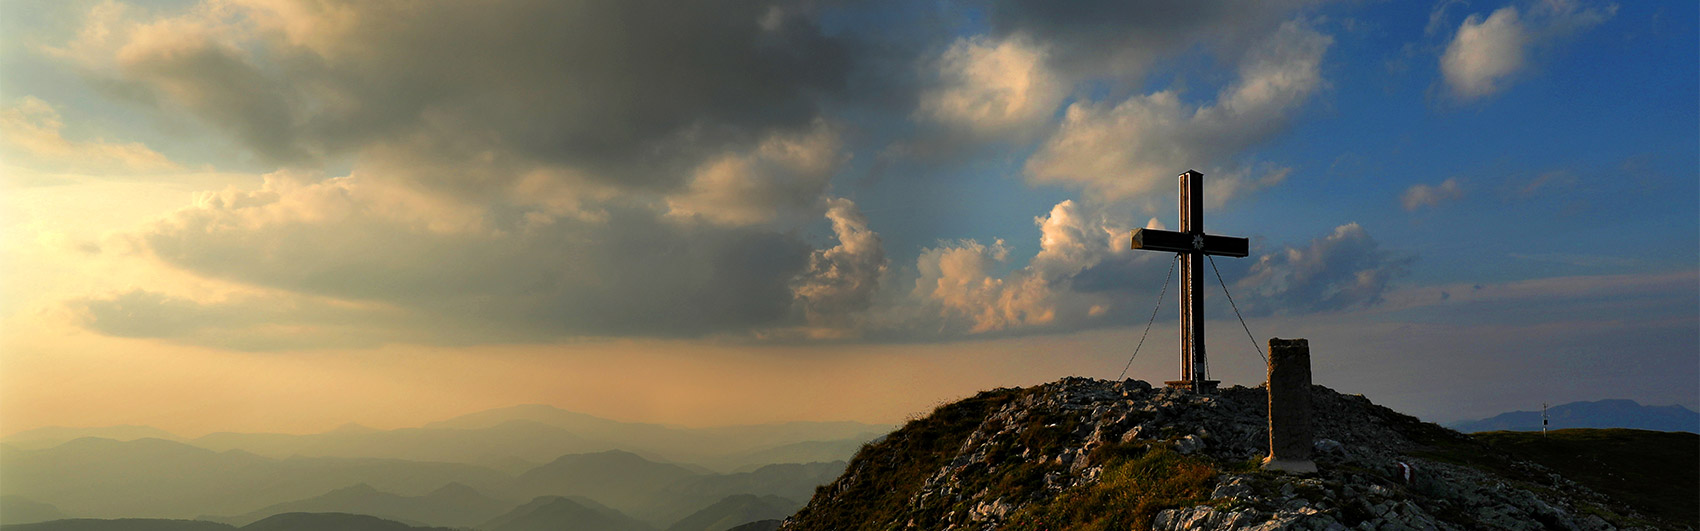 Im rechten Bildbereich - Gipfelkreuz auf einer Bergkuppel bei Sonnenuntergang